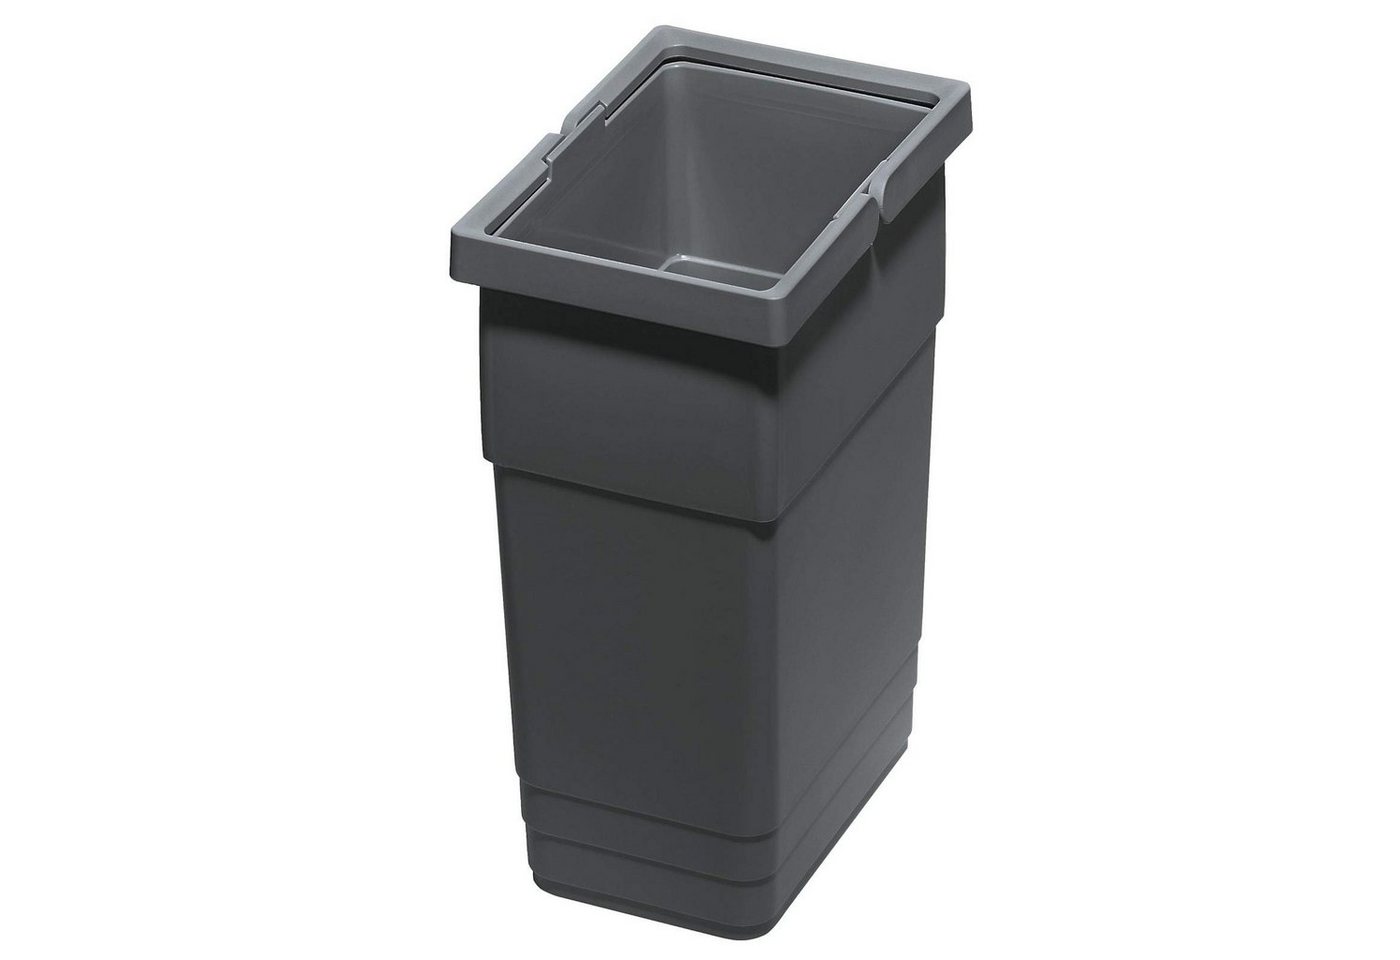 SO-TECH® Mülltrennsystem Ninka eins2vier Abfallsammler Höhe: 275 mm Volumen: 6 Liter, 210 x 140 mm dunkelgrau Komposteimer Recycling-Mülleimer von SO-TECH®